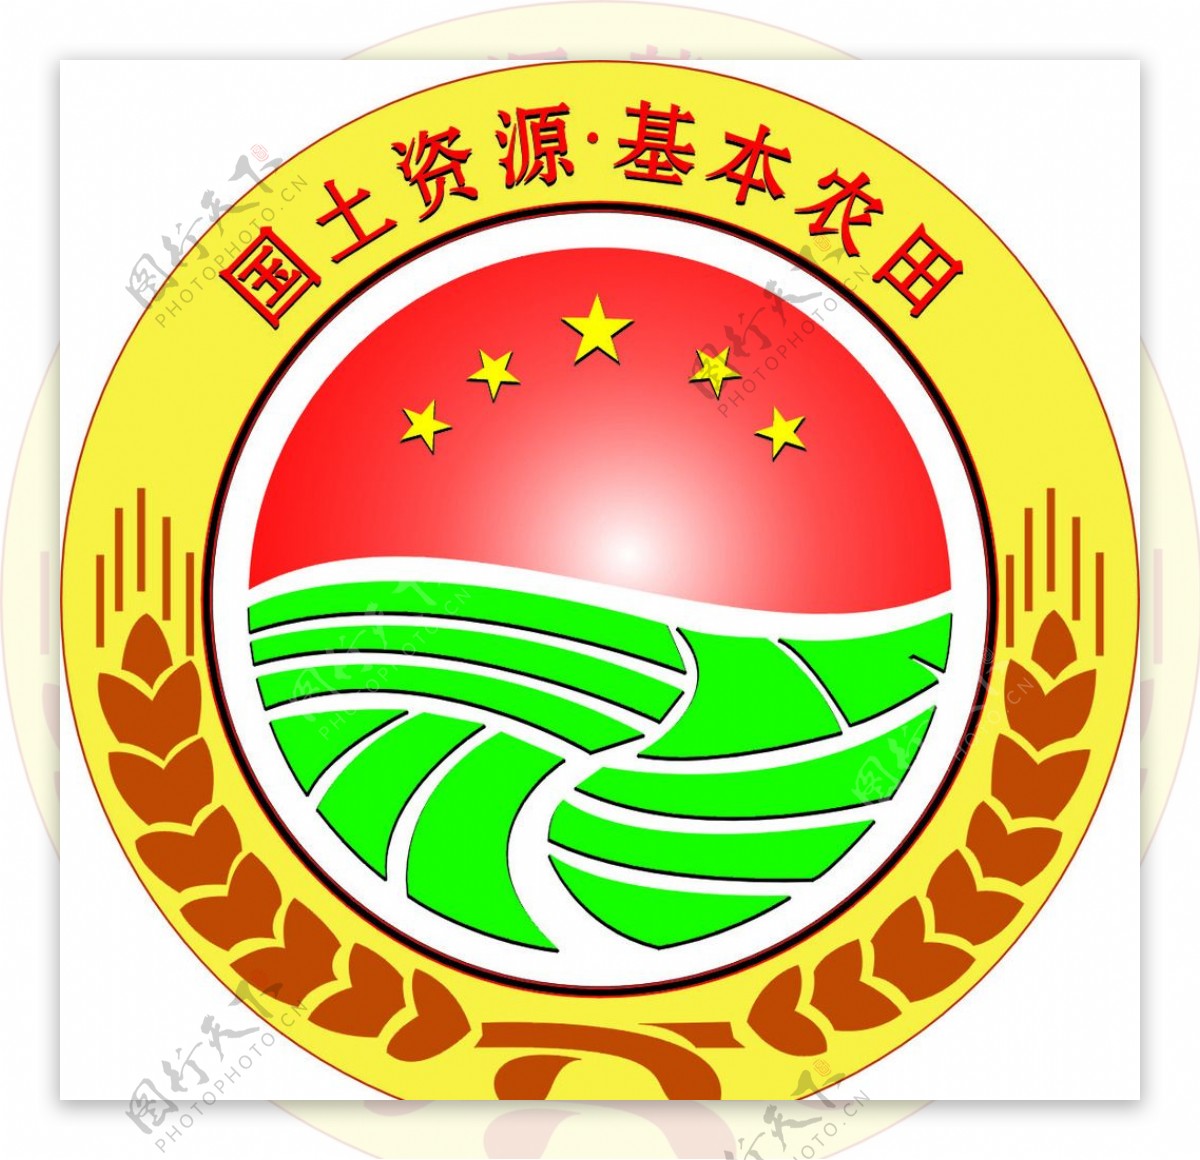 西南丘陵区高标准基本农田建设适宜性评价与选址——以重庆市垫江县为例